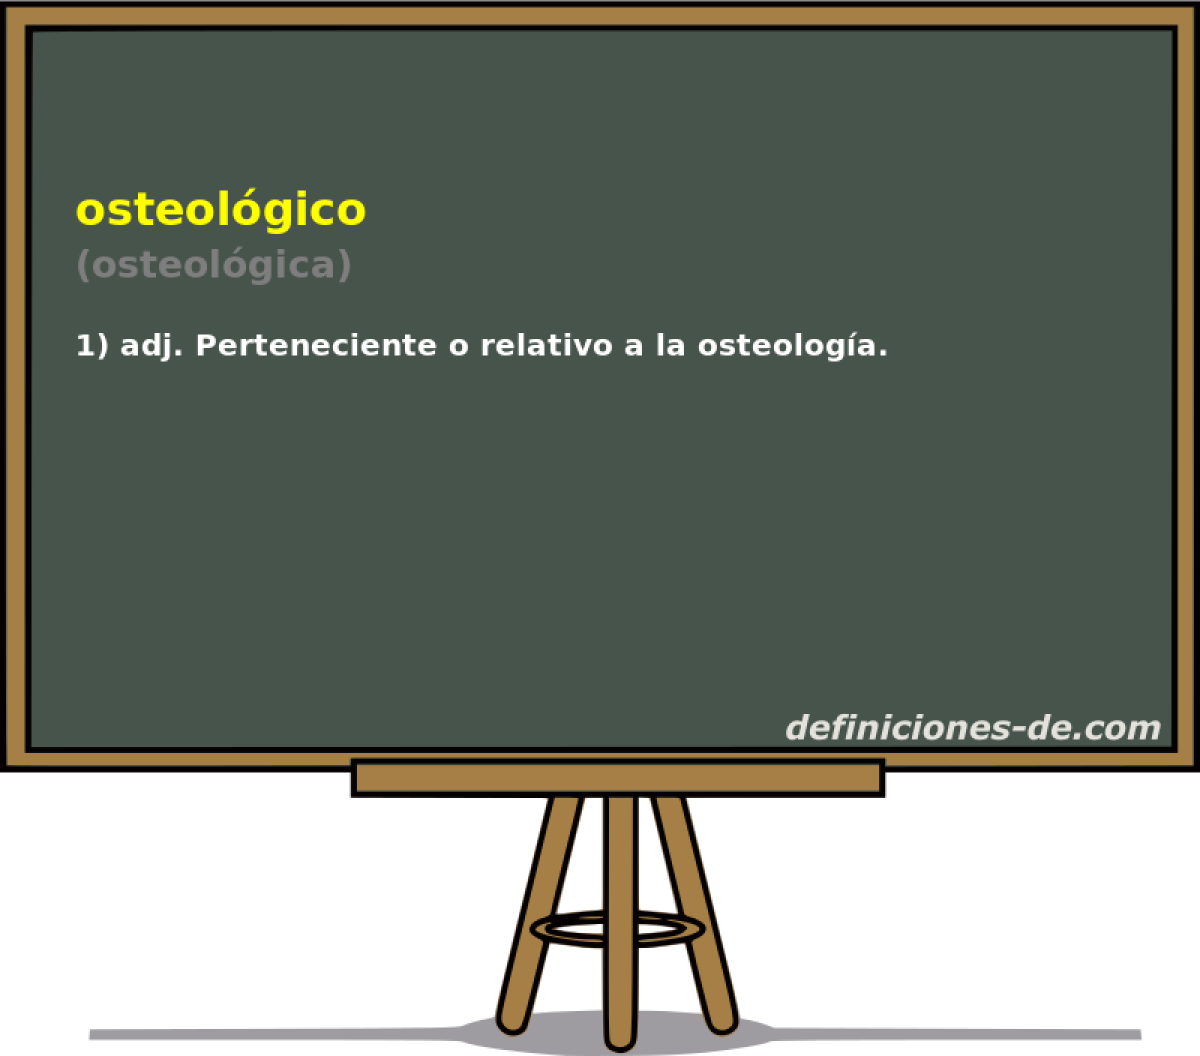 osteolgico (osteolgica)